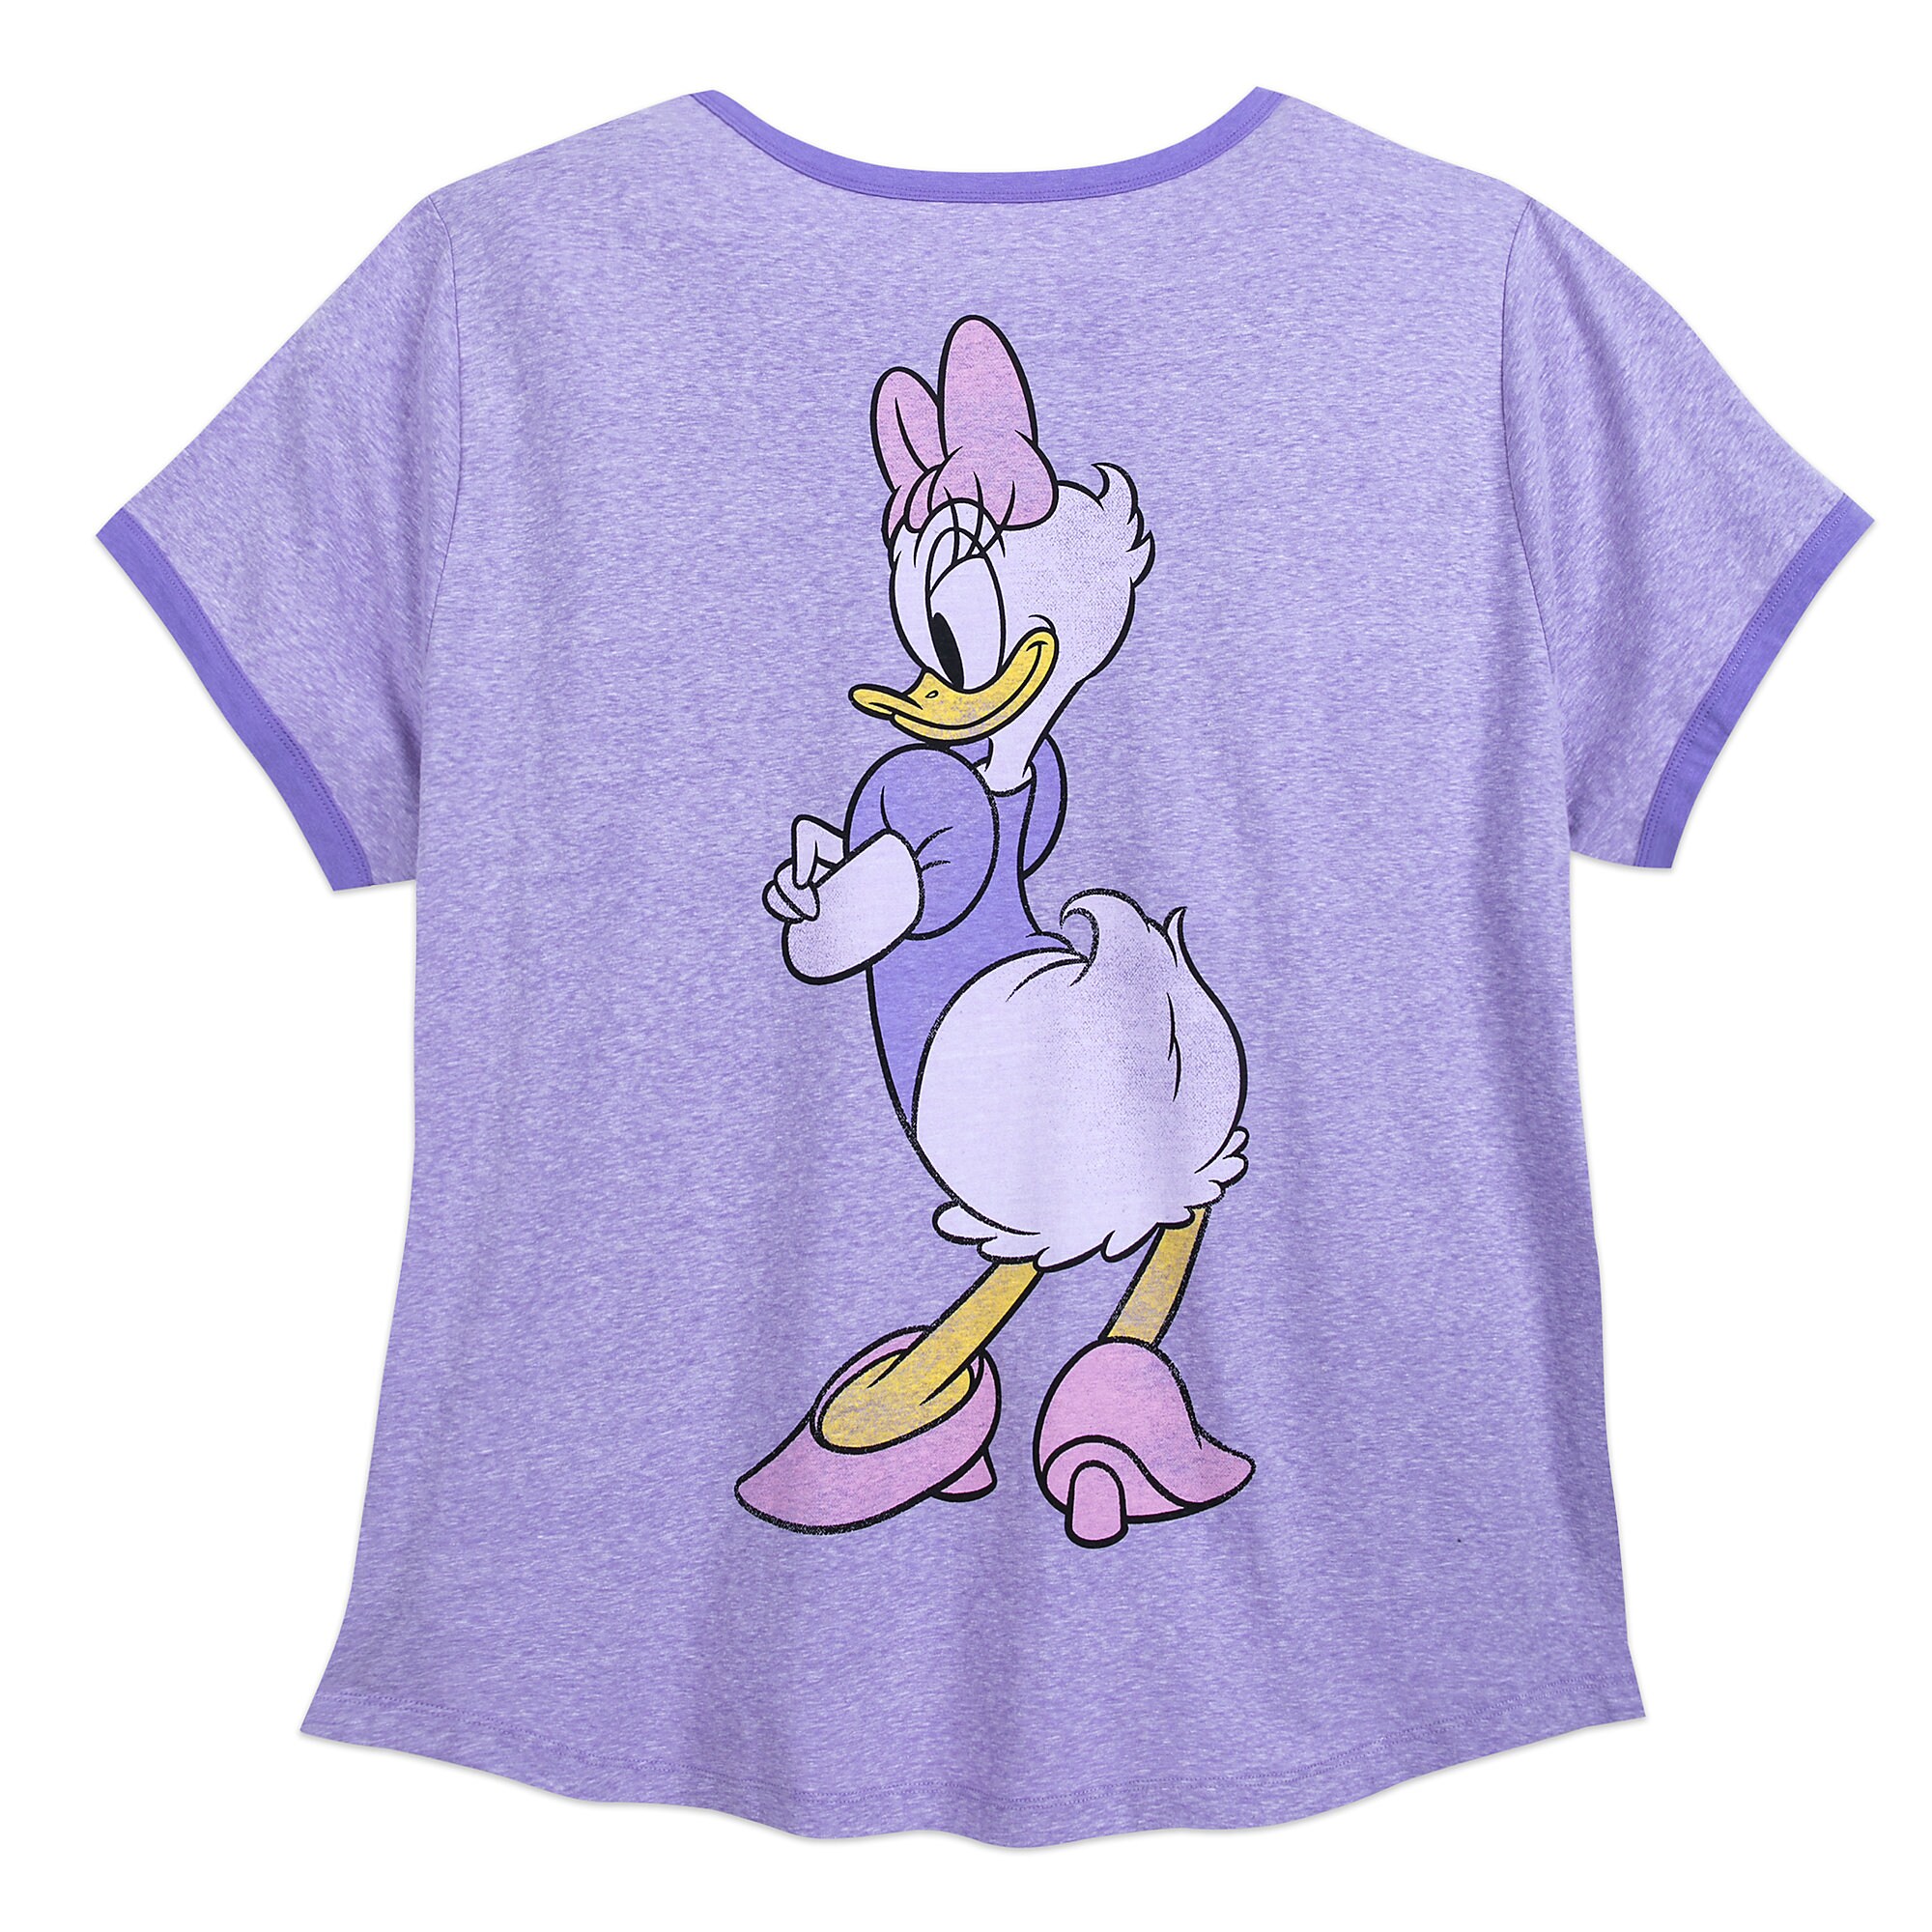 Daisy Duck Ringer T-Shirt for Women - Extended Size